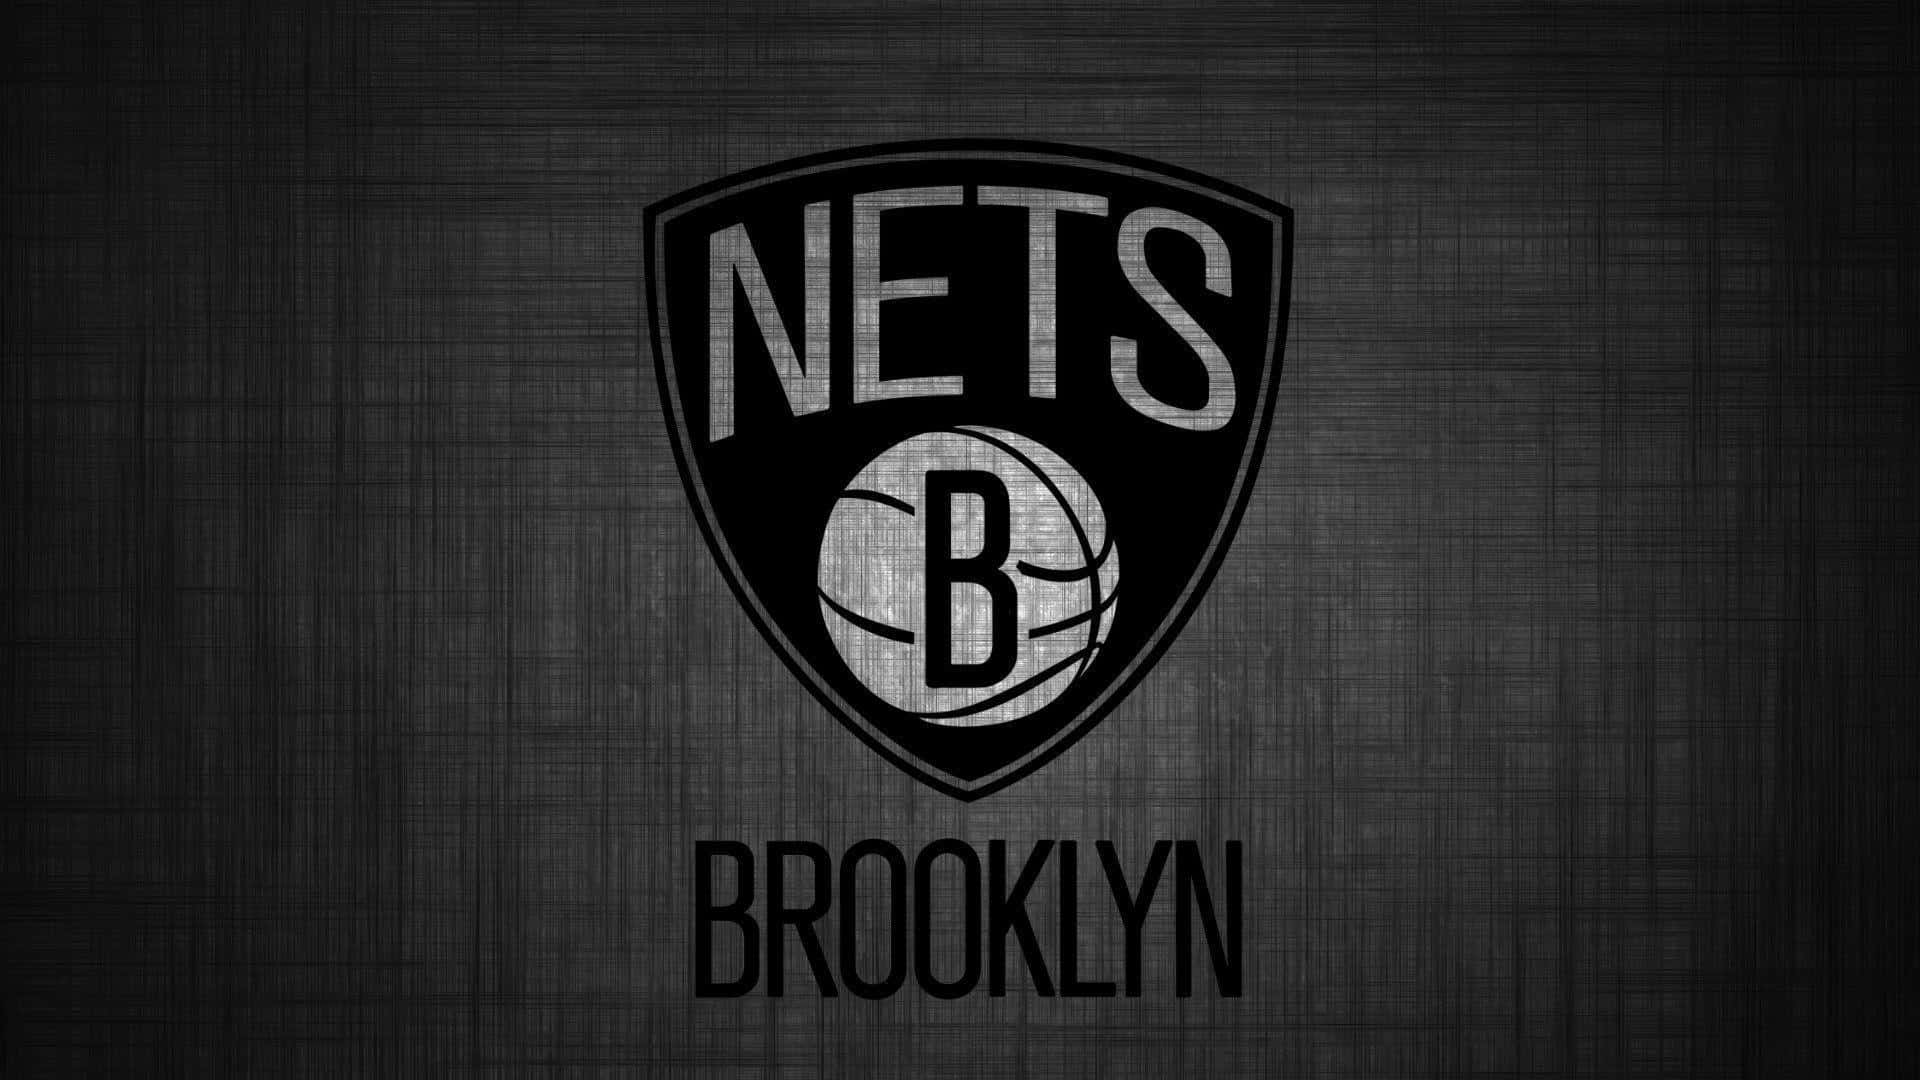 Losbrooklyn Nets Buscan Dominar La Nba En La Temporada 2019-20.